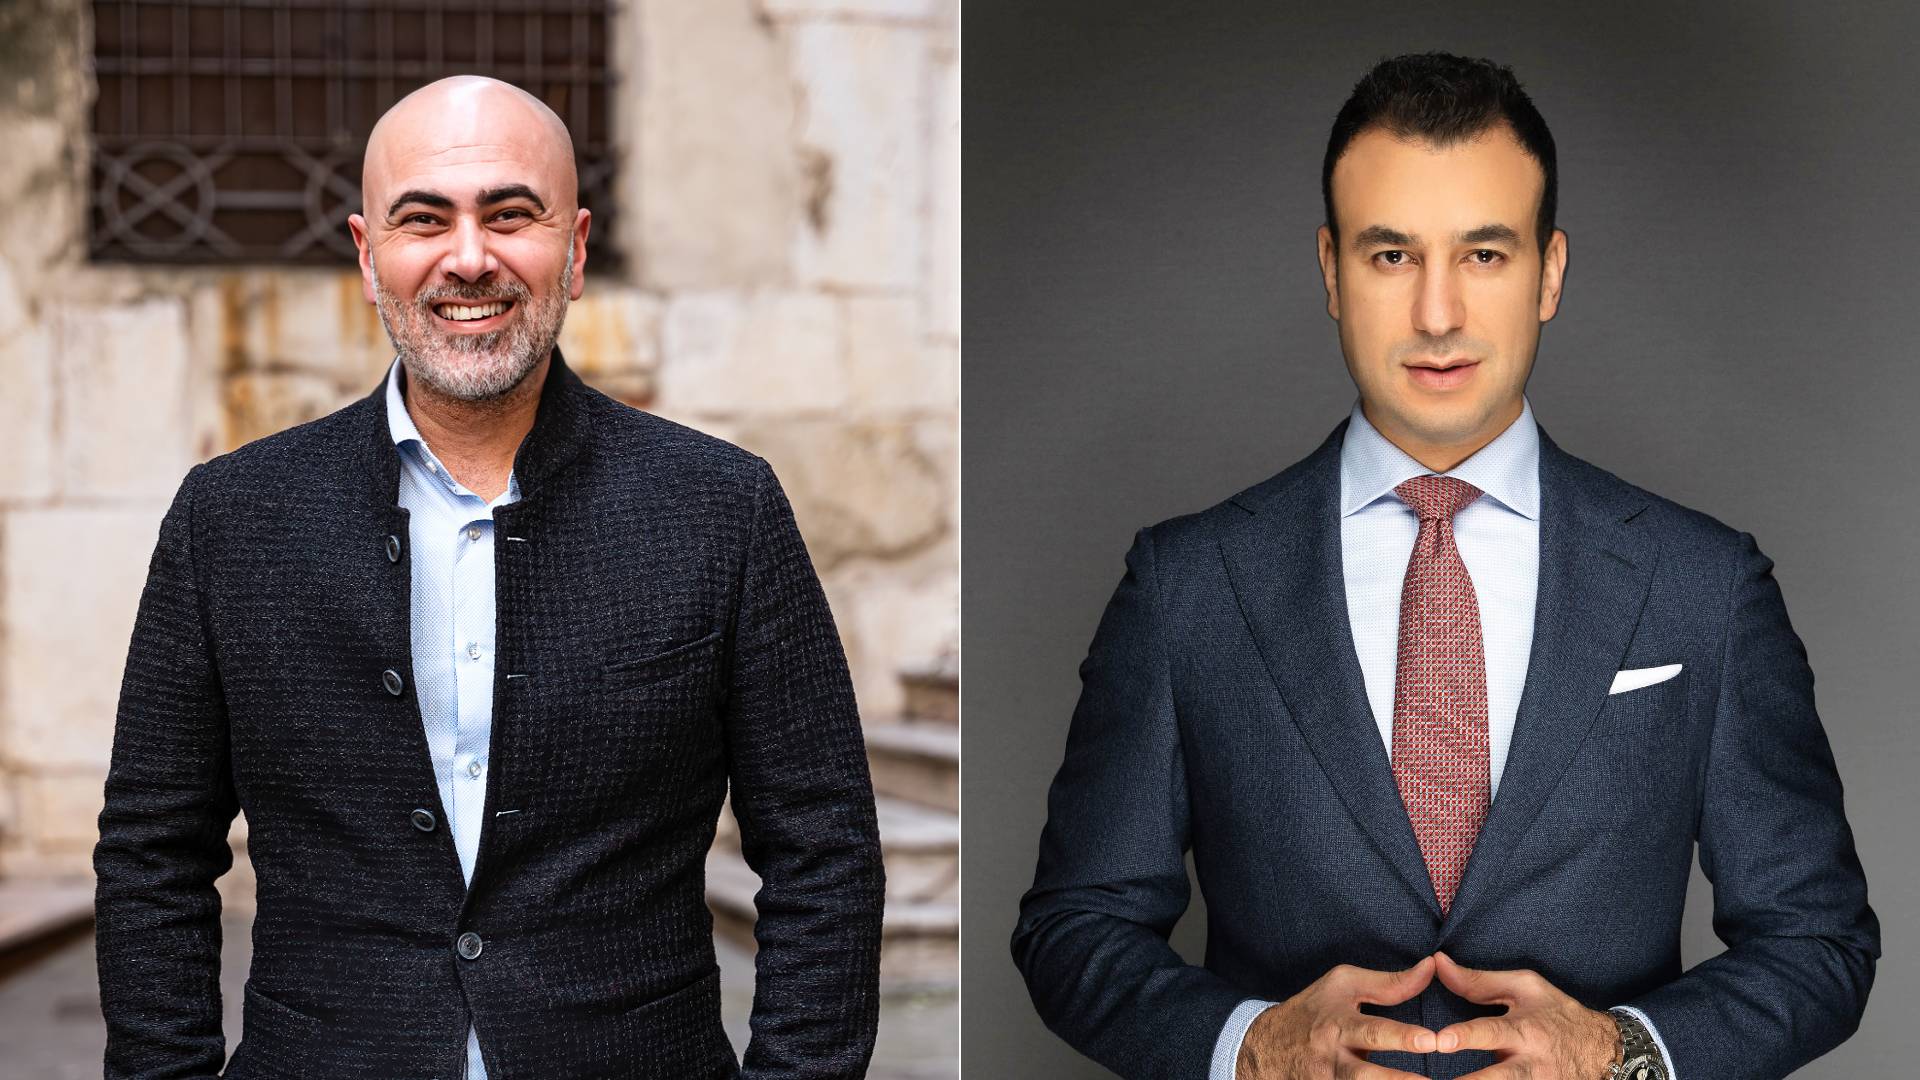 Iyas Ashkar (à gauche) vit aujourd’hui en Italie, tandis que Firas Hashem Ashayer s’est installé aux Émirats arabes unis (photos fournies)